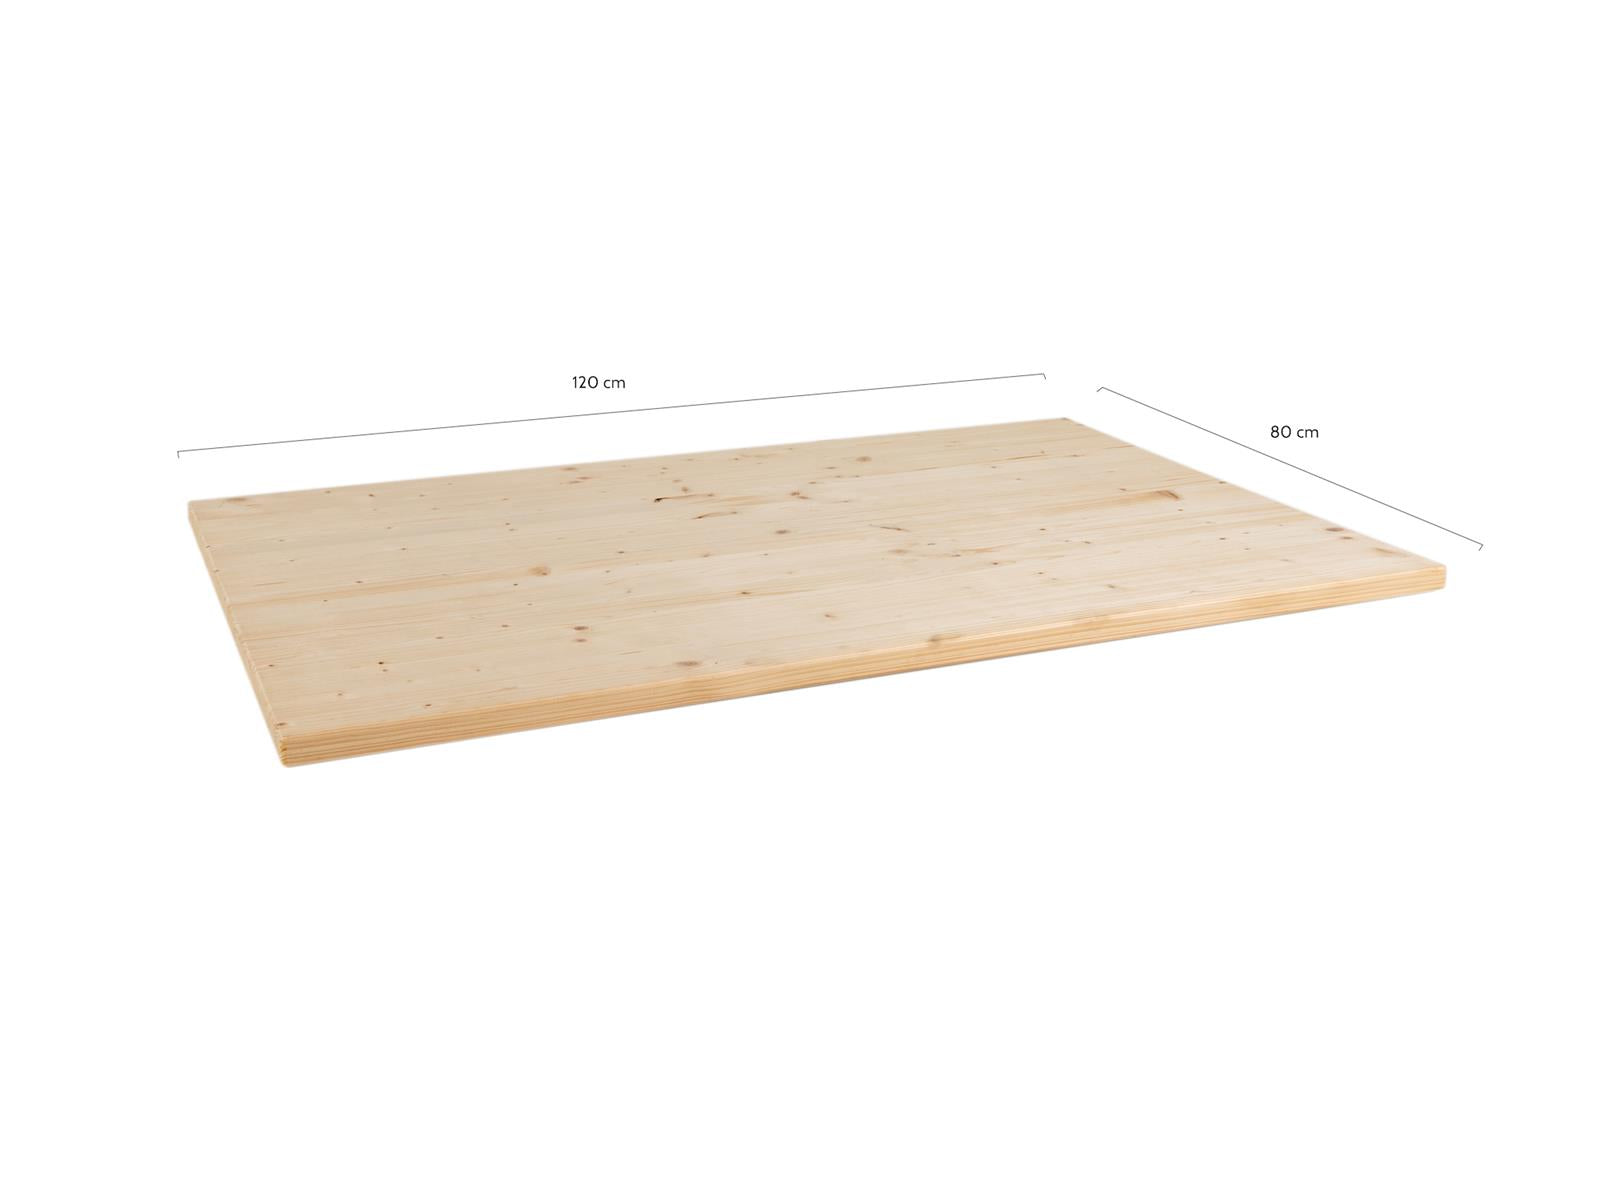 Goedkoop houten tafelblad x 80 cm | Picknicktafel.nl